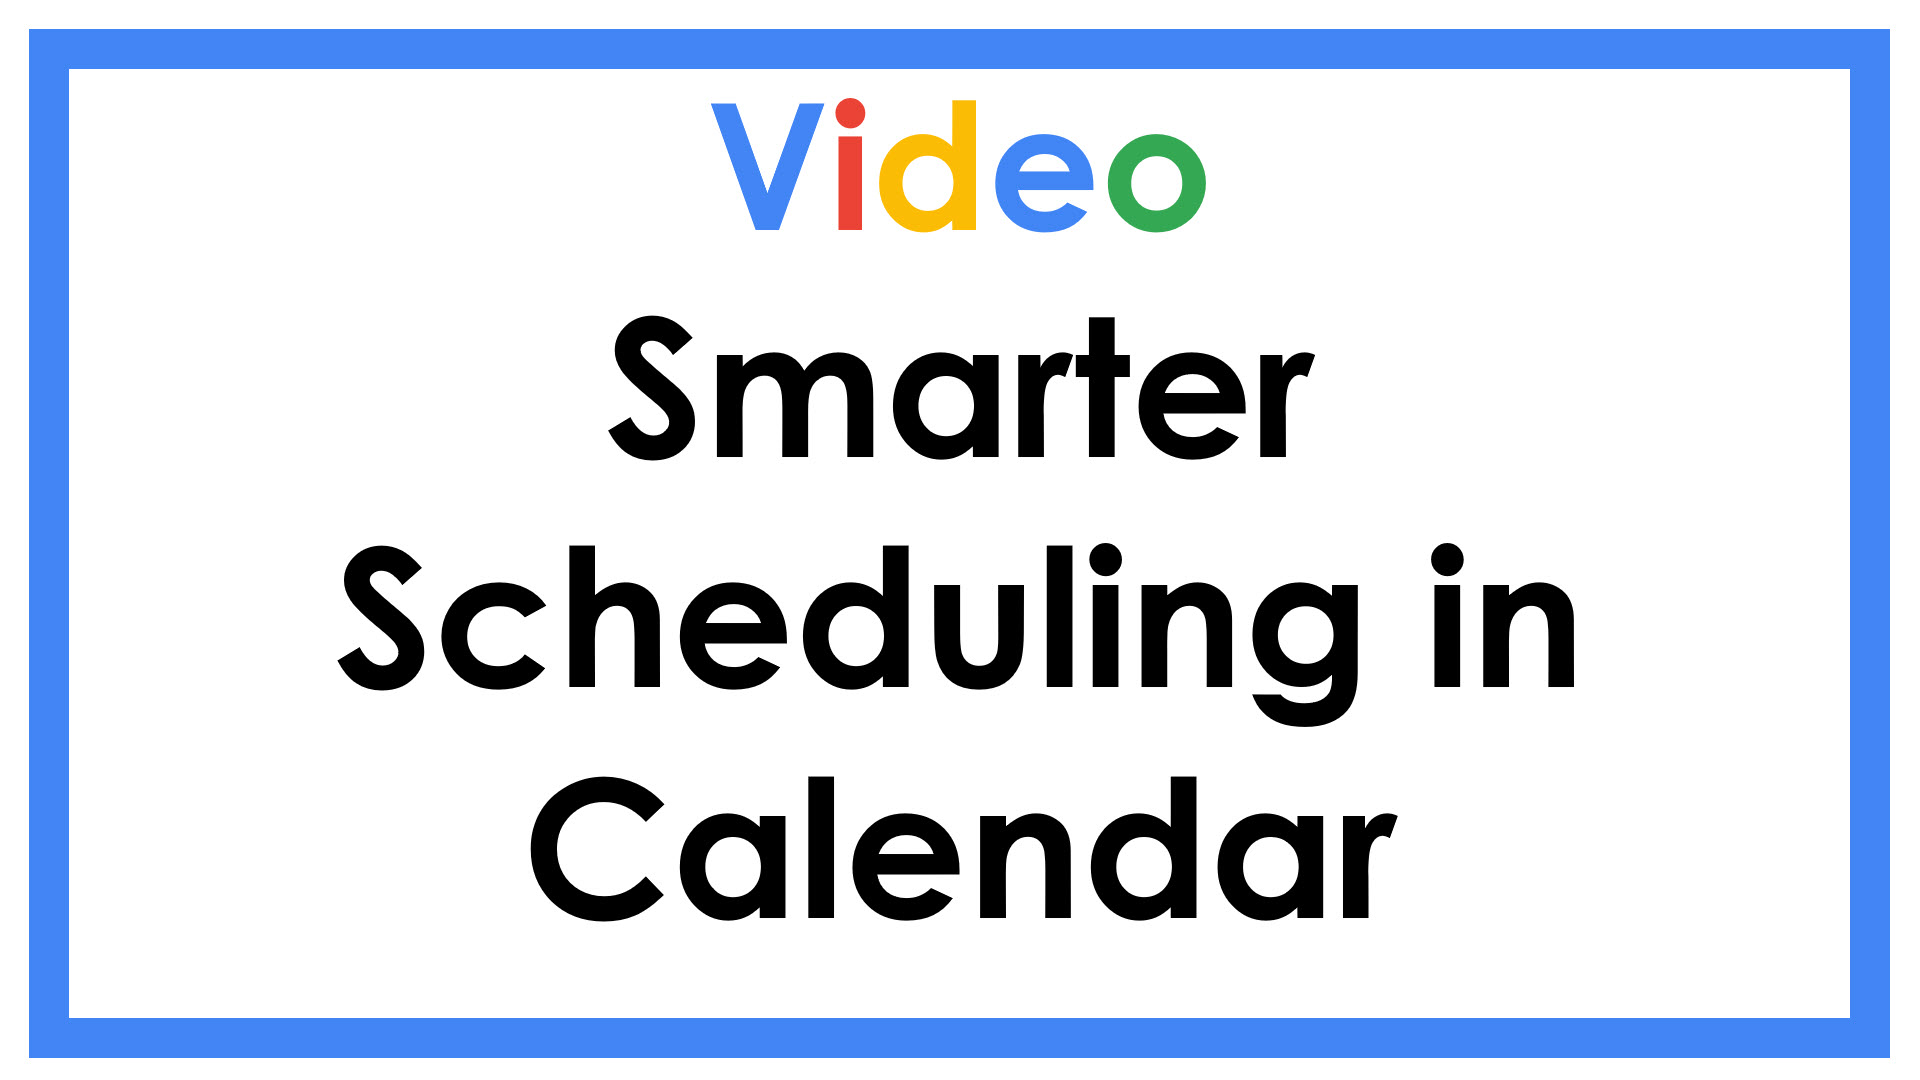 Video Smarter Scheduling in Calendar